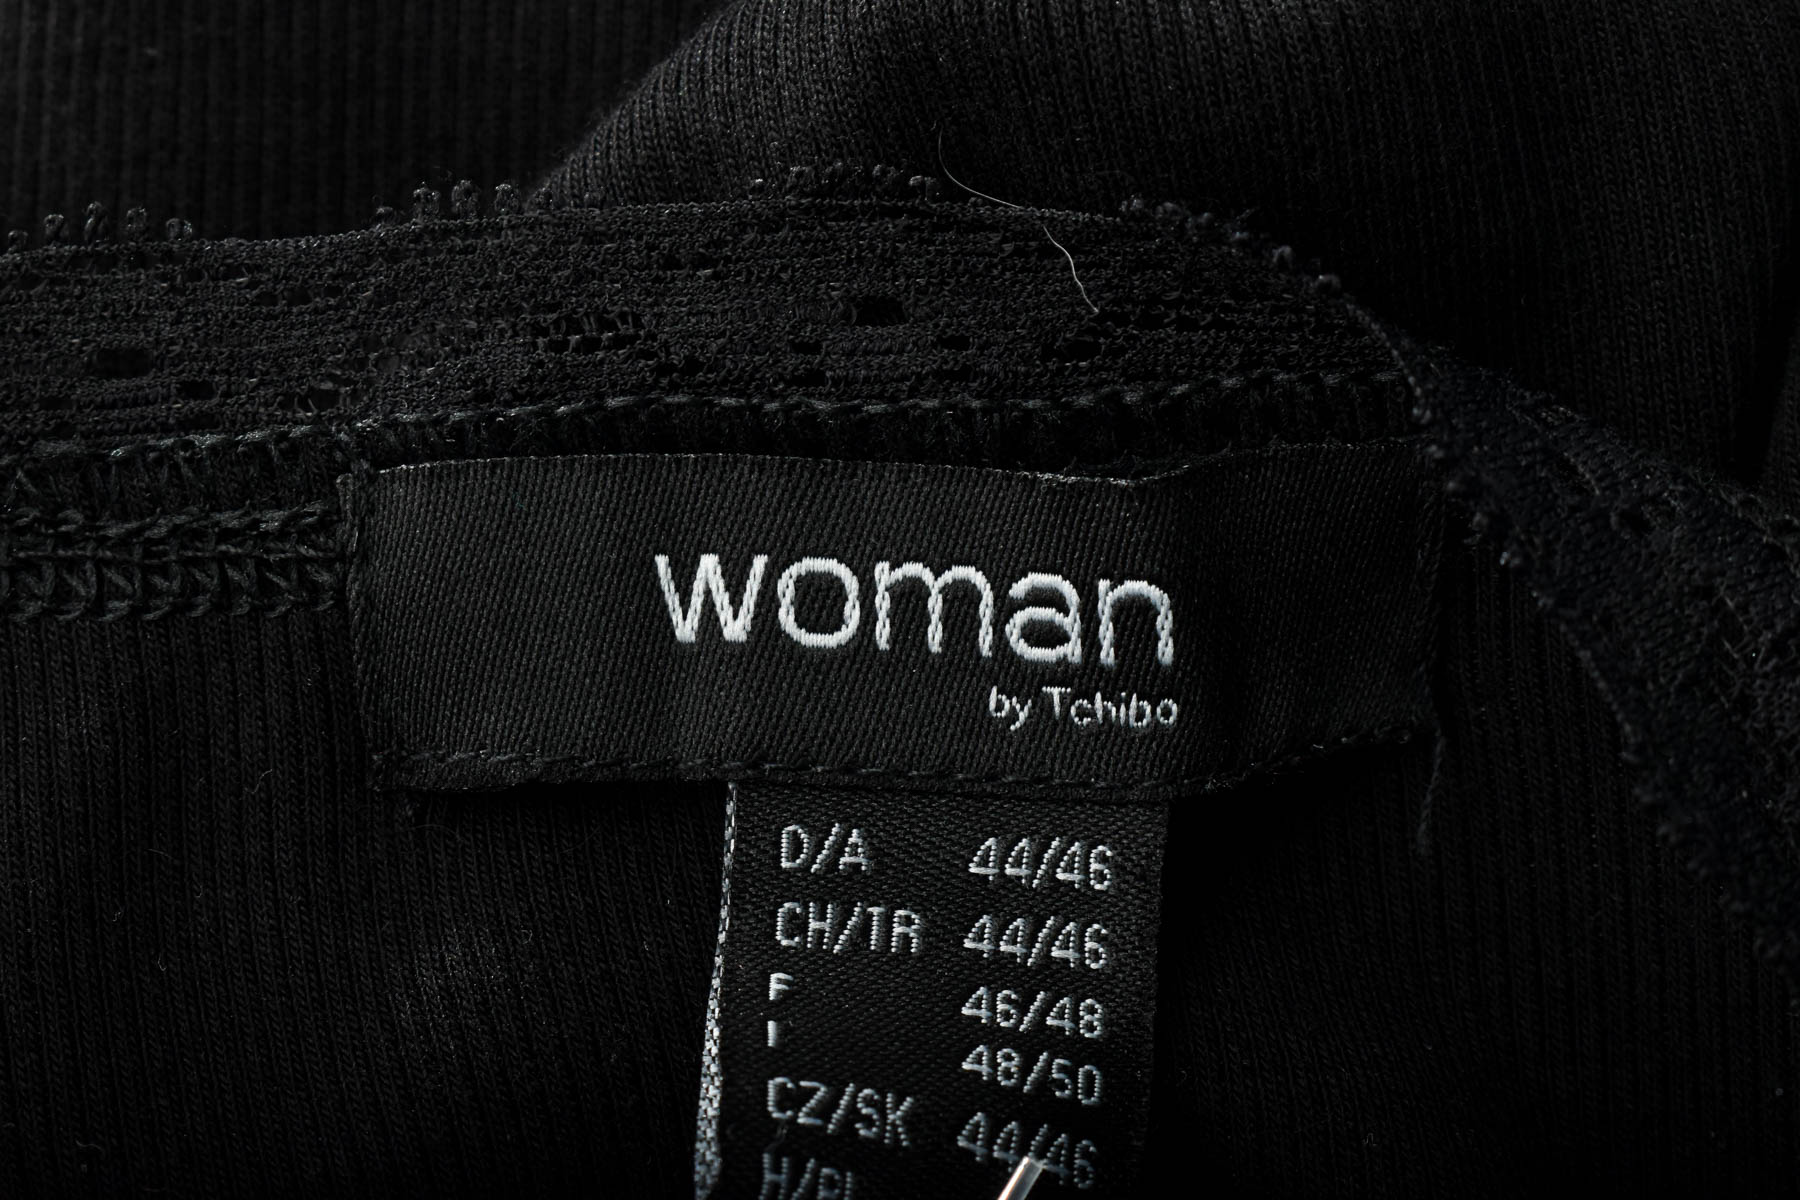 Γυναικεία μπλούζα - Woman by Tchibo - 2